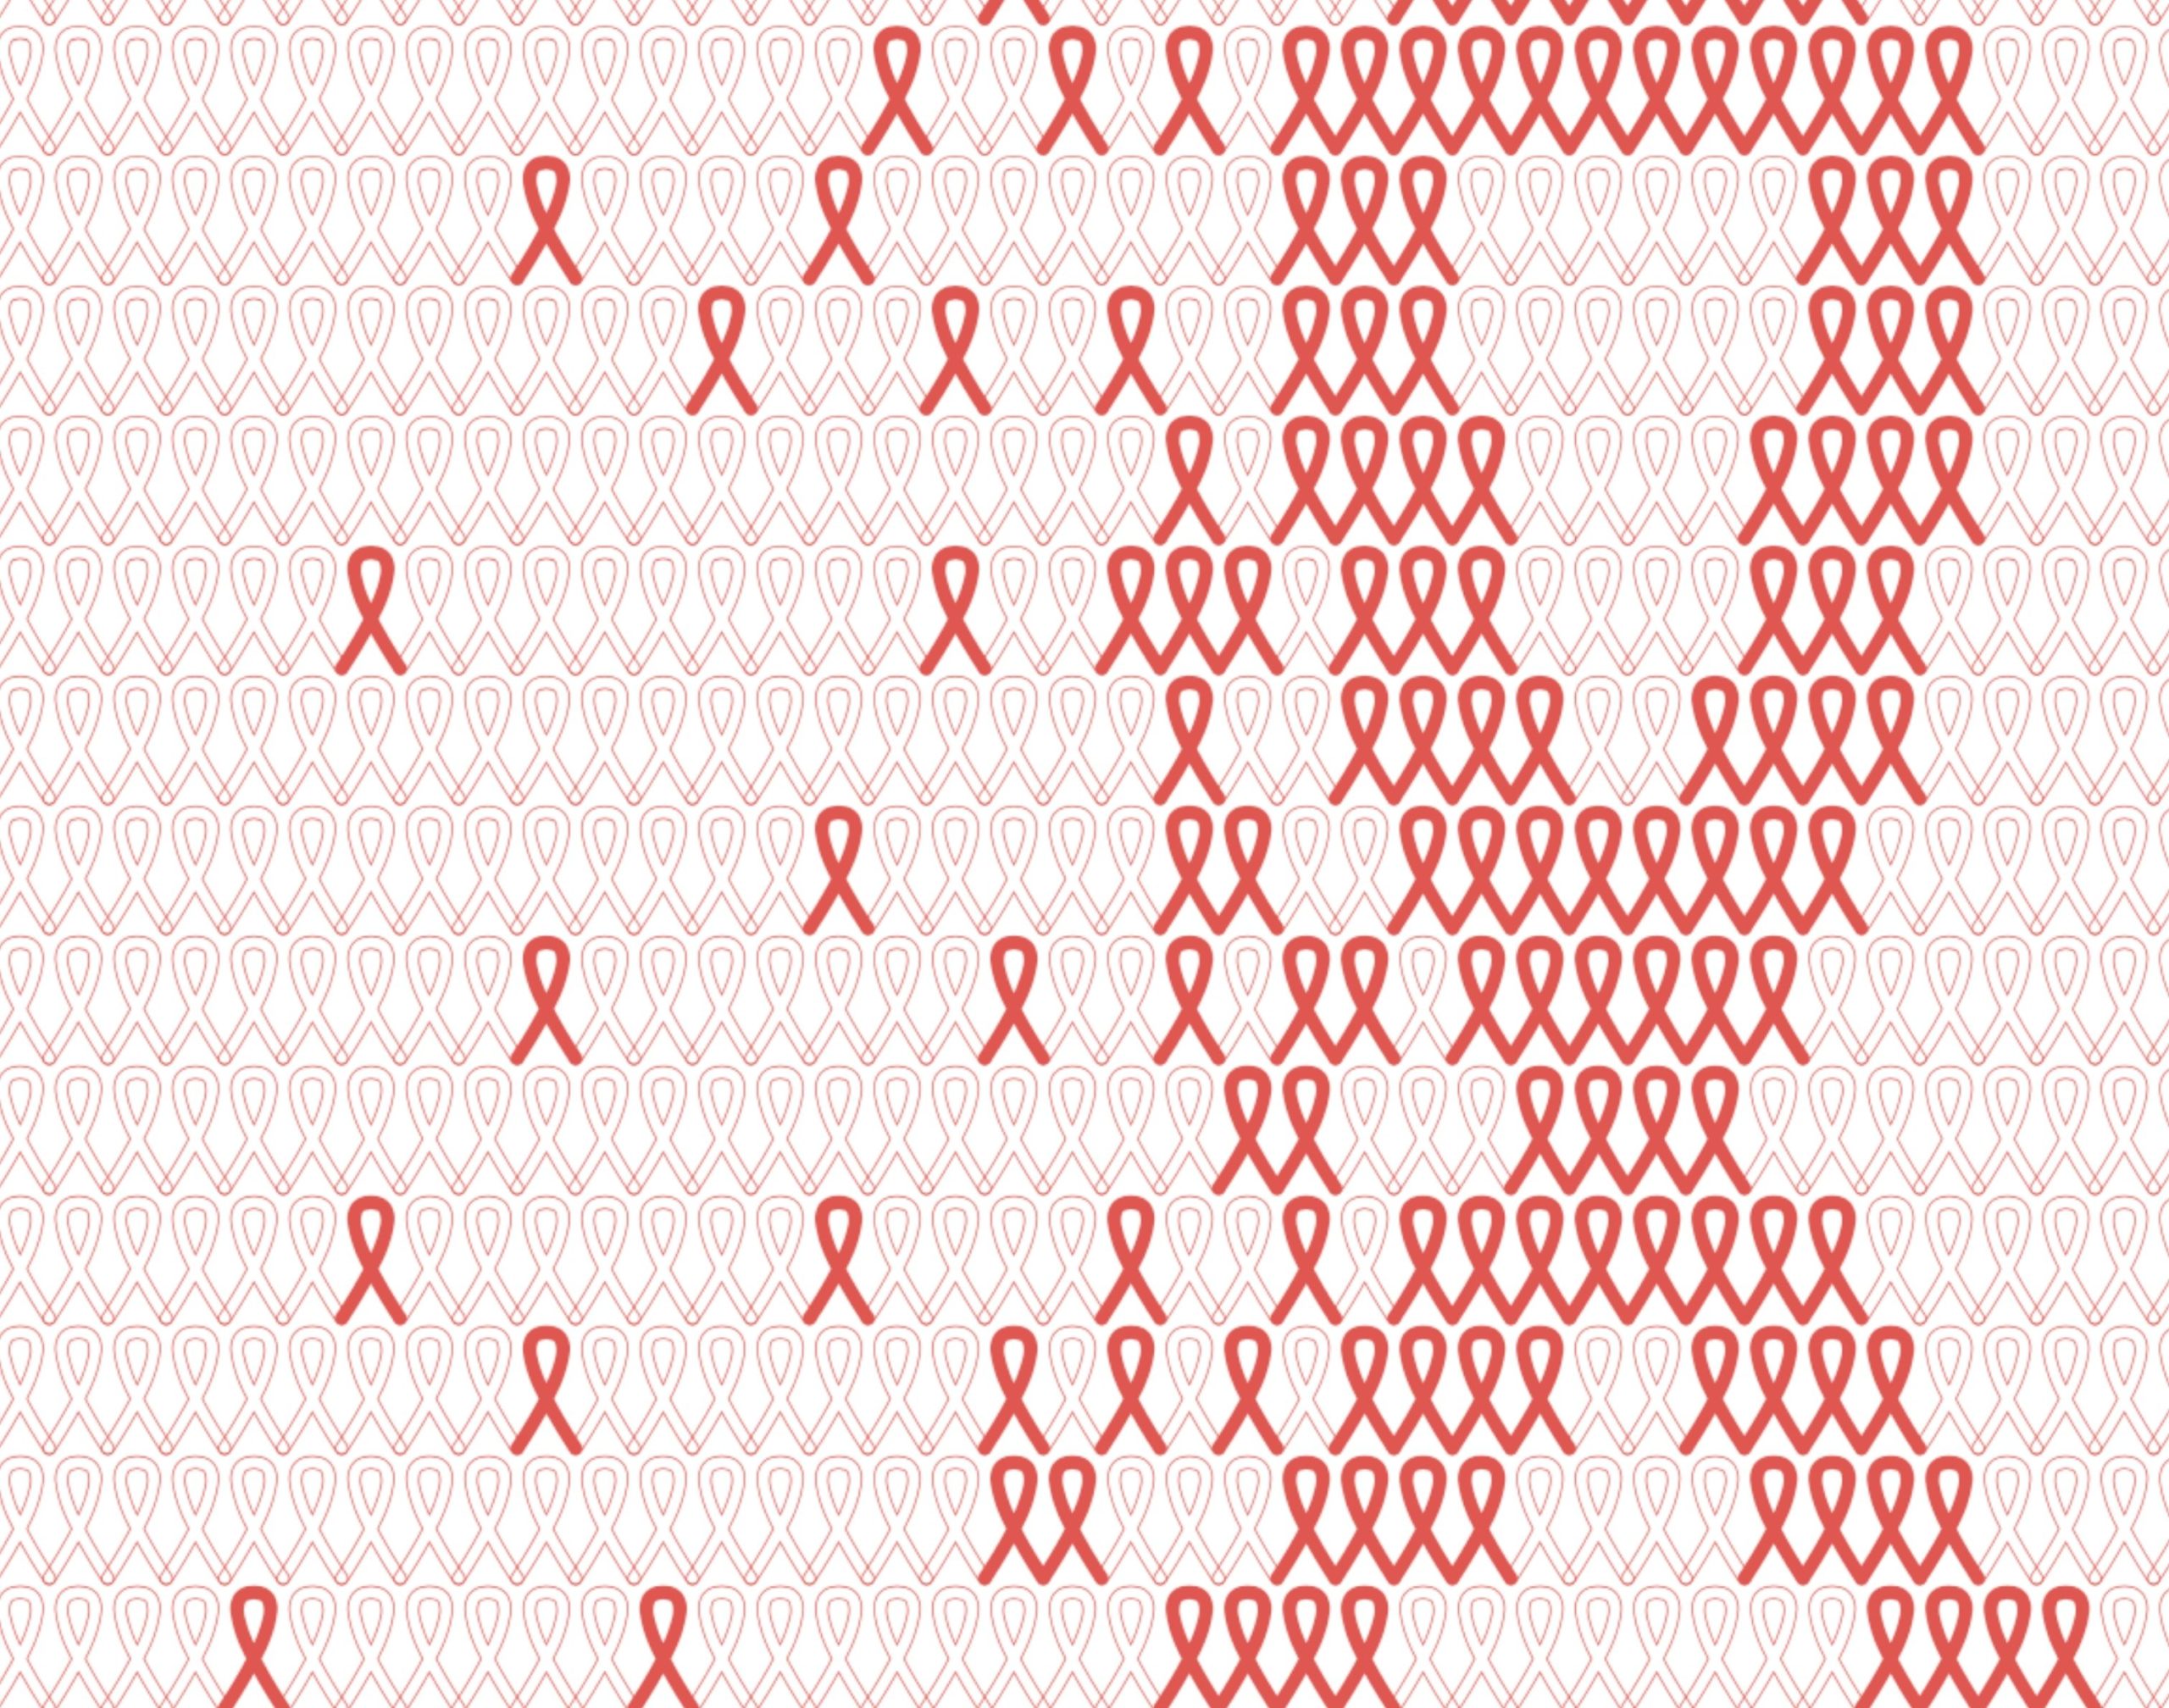 Dekoratives Poster zum Weltaidstag: Kleine, einzelne Rote Schleifen/Red Ribbons bewegen sich gleichsam von links auf die rechte Bildhälfte zu und bilden dort gemeinsam eine große Rote Schleife. Am unteren Bildrand steht in roten Großbuchstaben "WORLD AIDS DAY" und darunter, in weißer Schrift mit roter Outline "#SOLIDARITY"